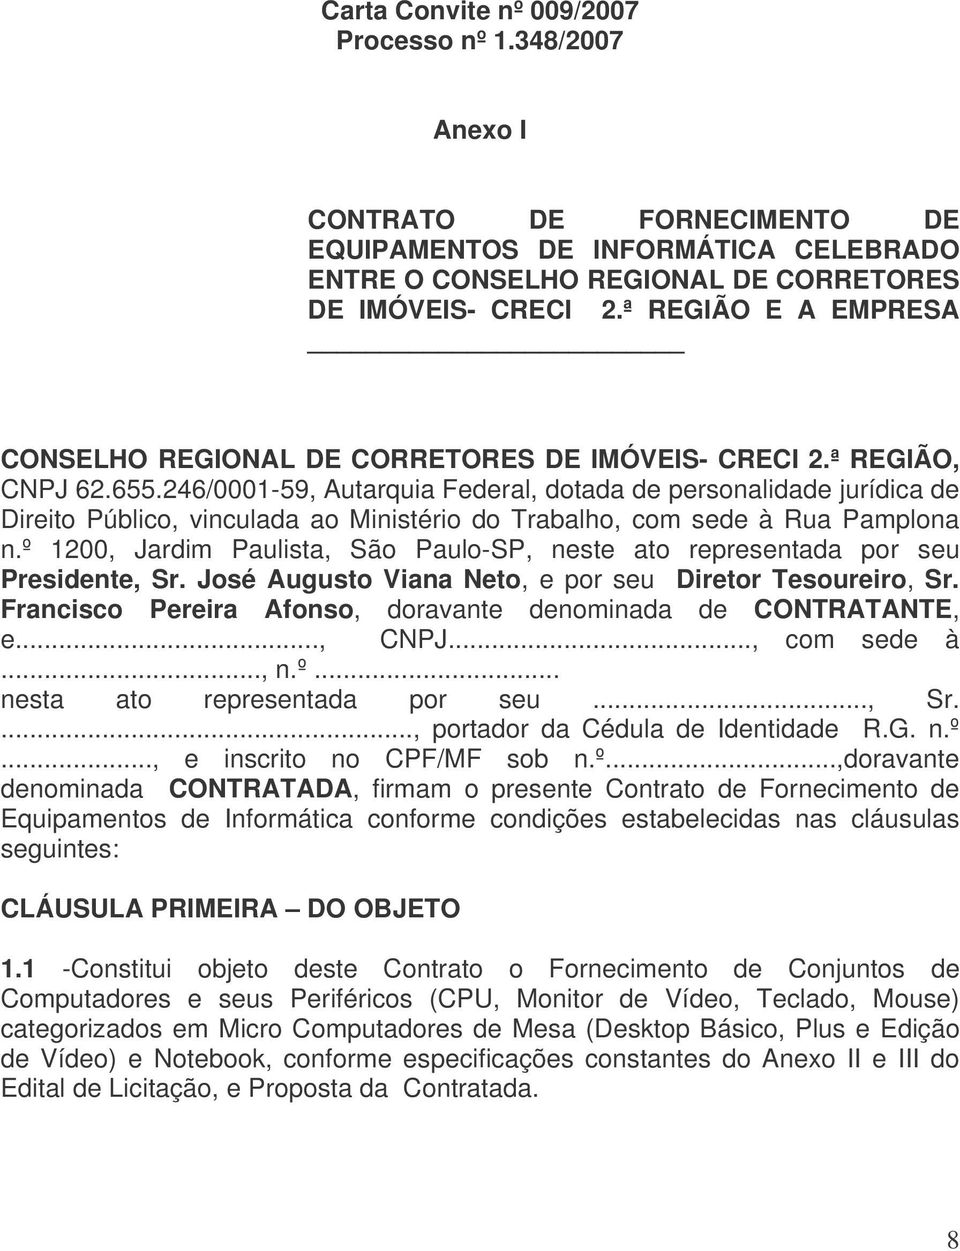 246/0001-59, Autarquia Federal, dotada de personalidade jurídica de Direito Público, vinculada ao Ministério do Trabalho, com sede à Rua Pamplona n.